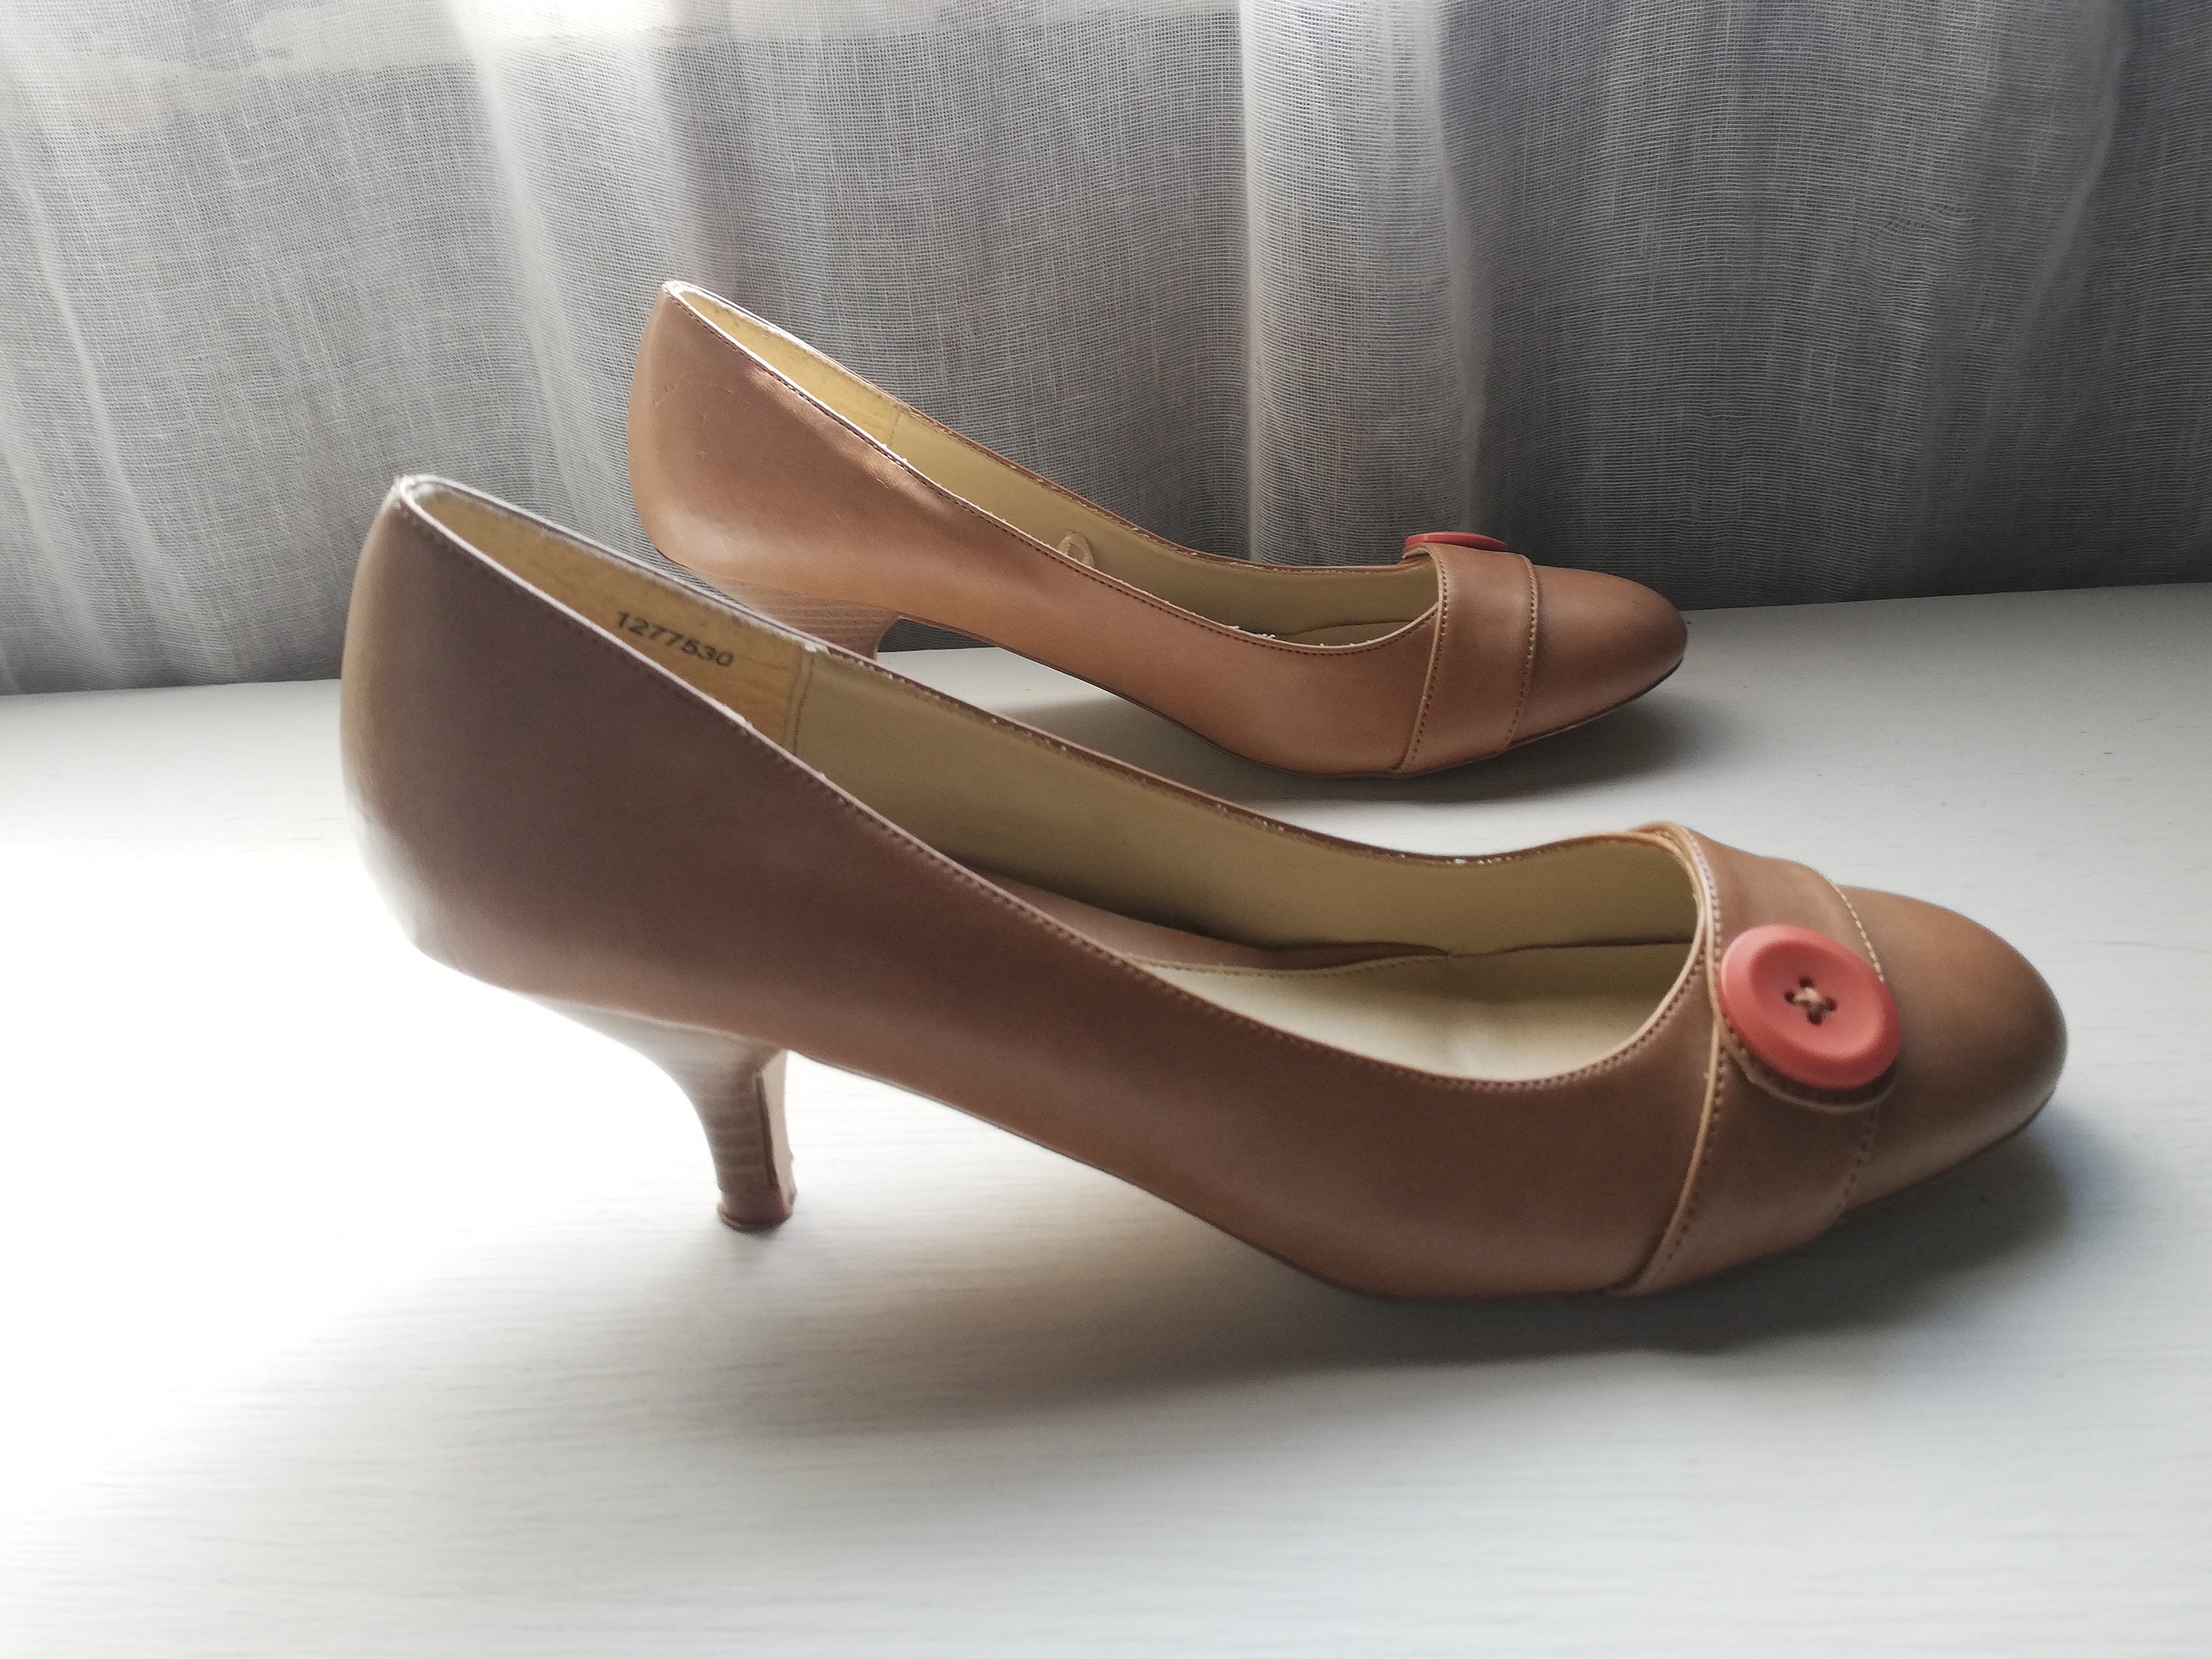 Women's Shoes Size 39 Eur 8 Us 6 Uk - Etsy Ireland